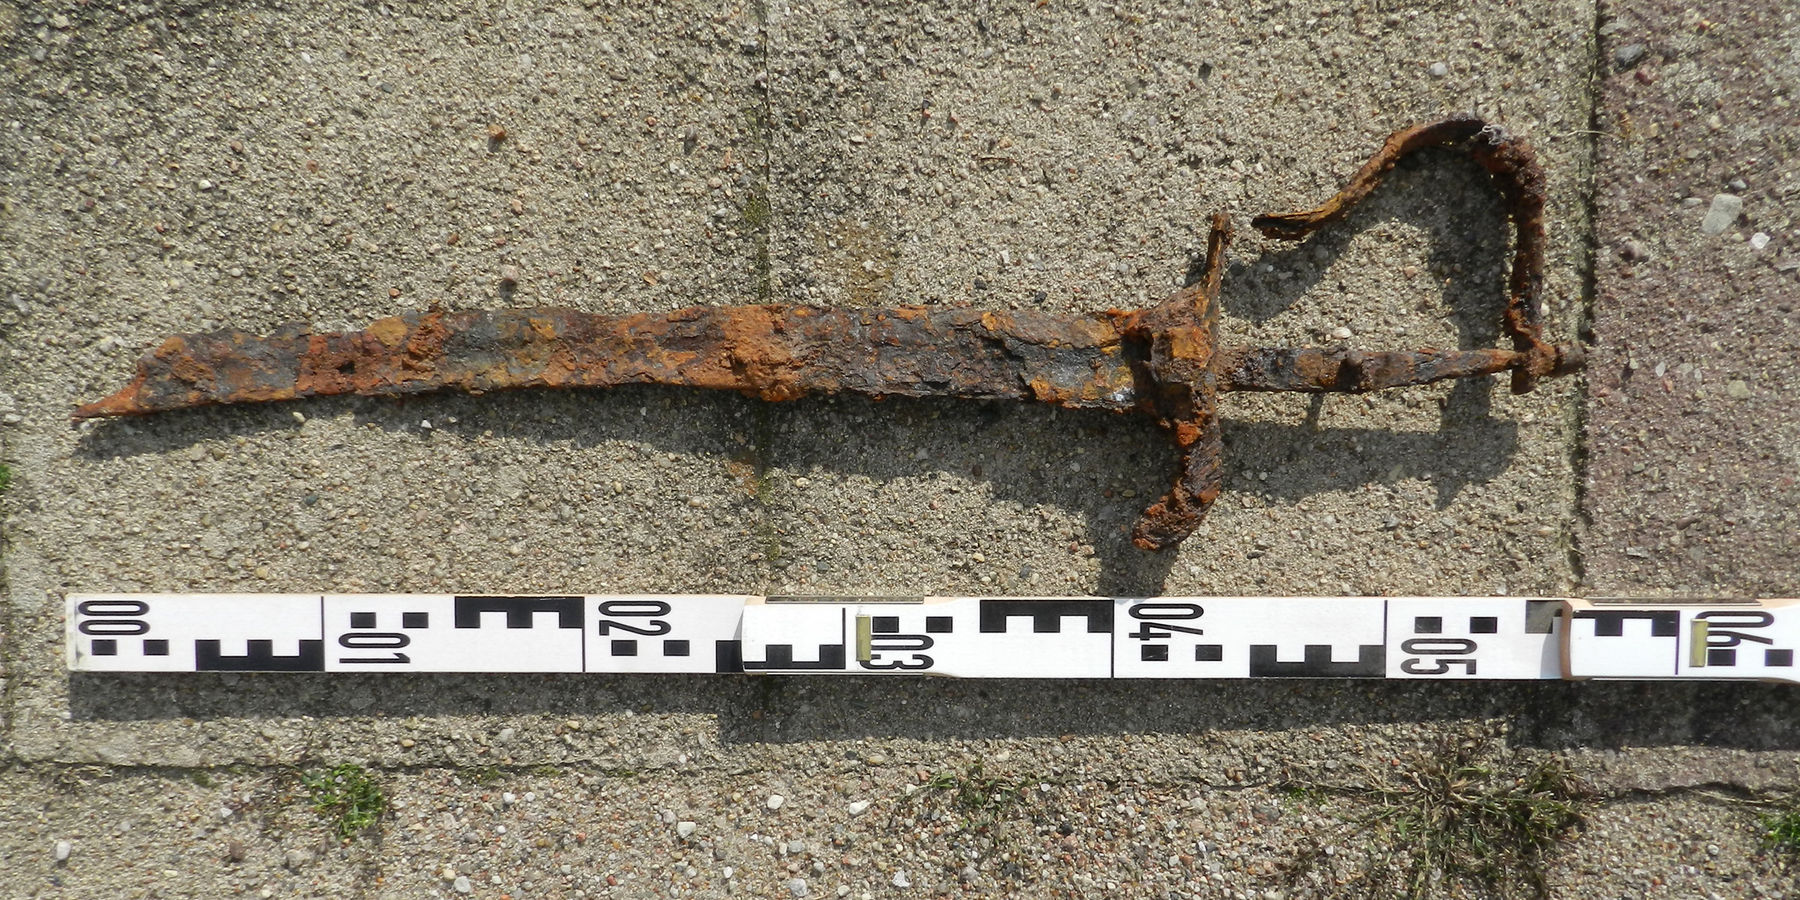 Das Fragment eines wohl der Kavallerie zugehörigen eisernen Säbels der bei Baggerarbeiten im Zuge der Sanierung des Fundaments gefunden wurde. © 2021 Dirk Schumann